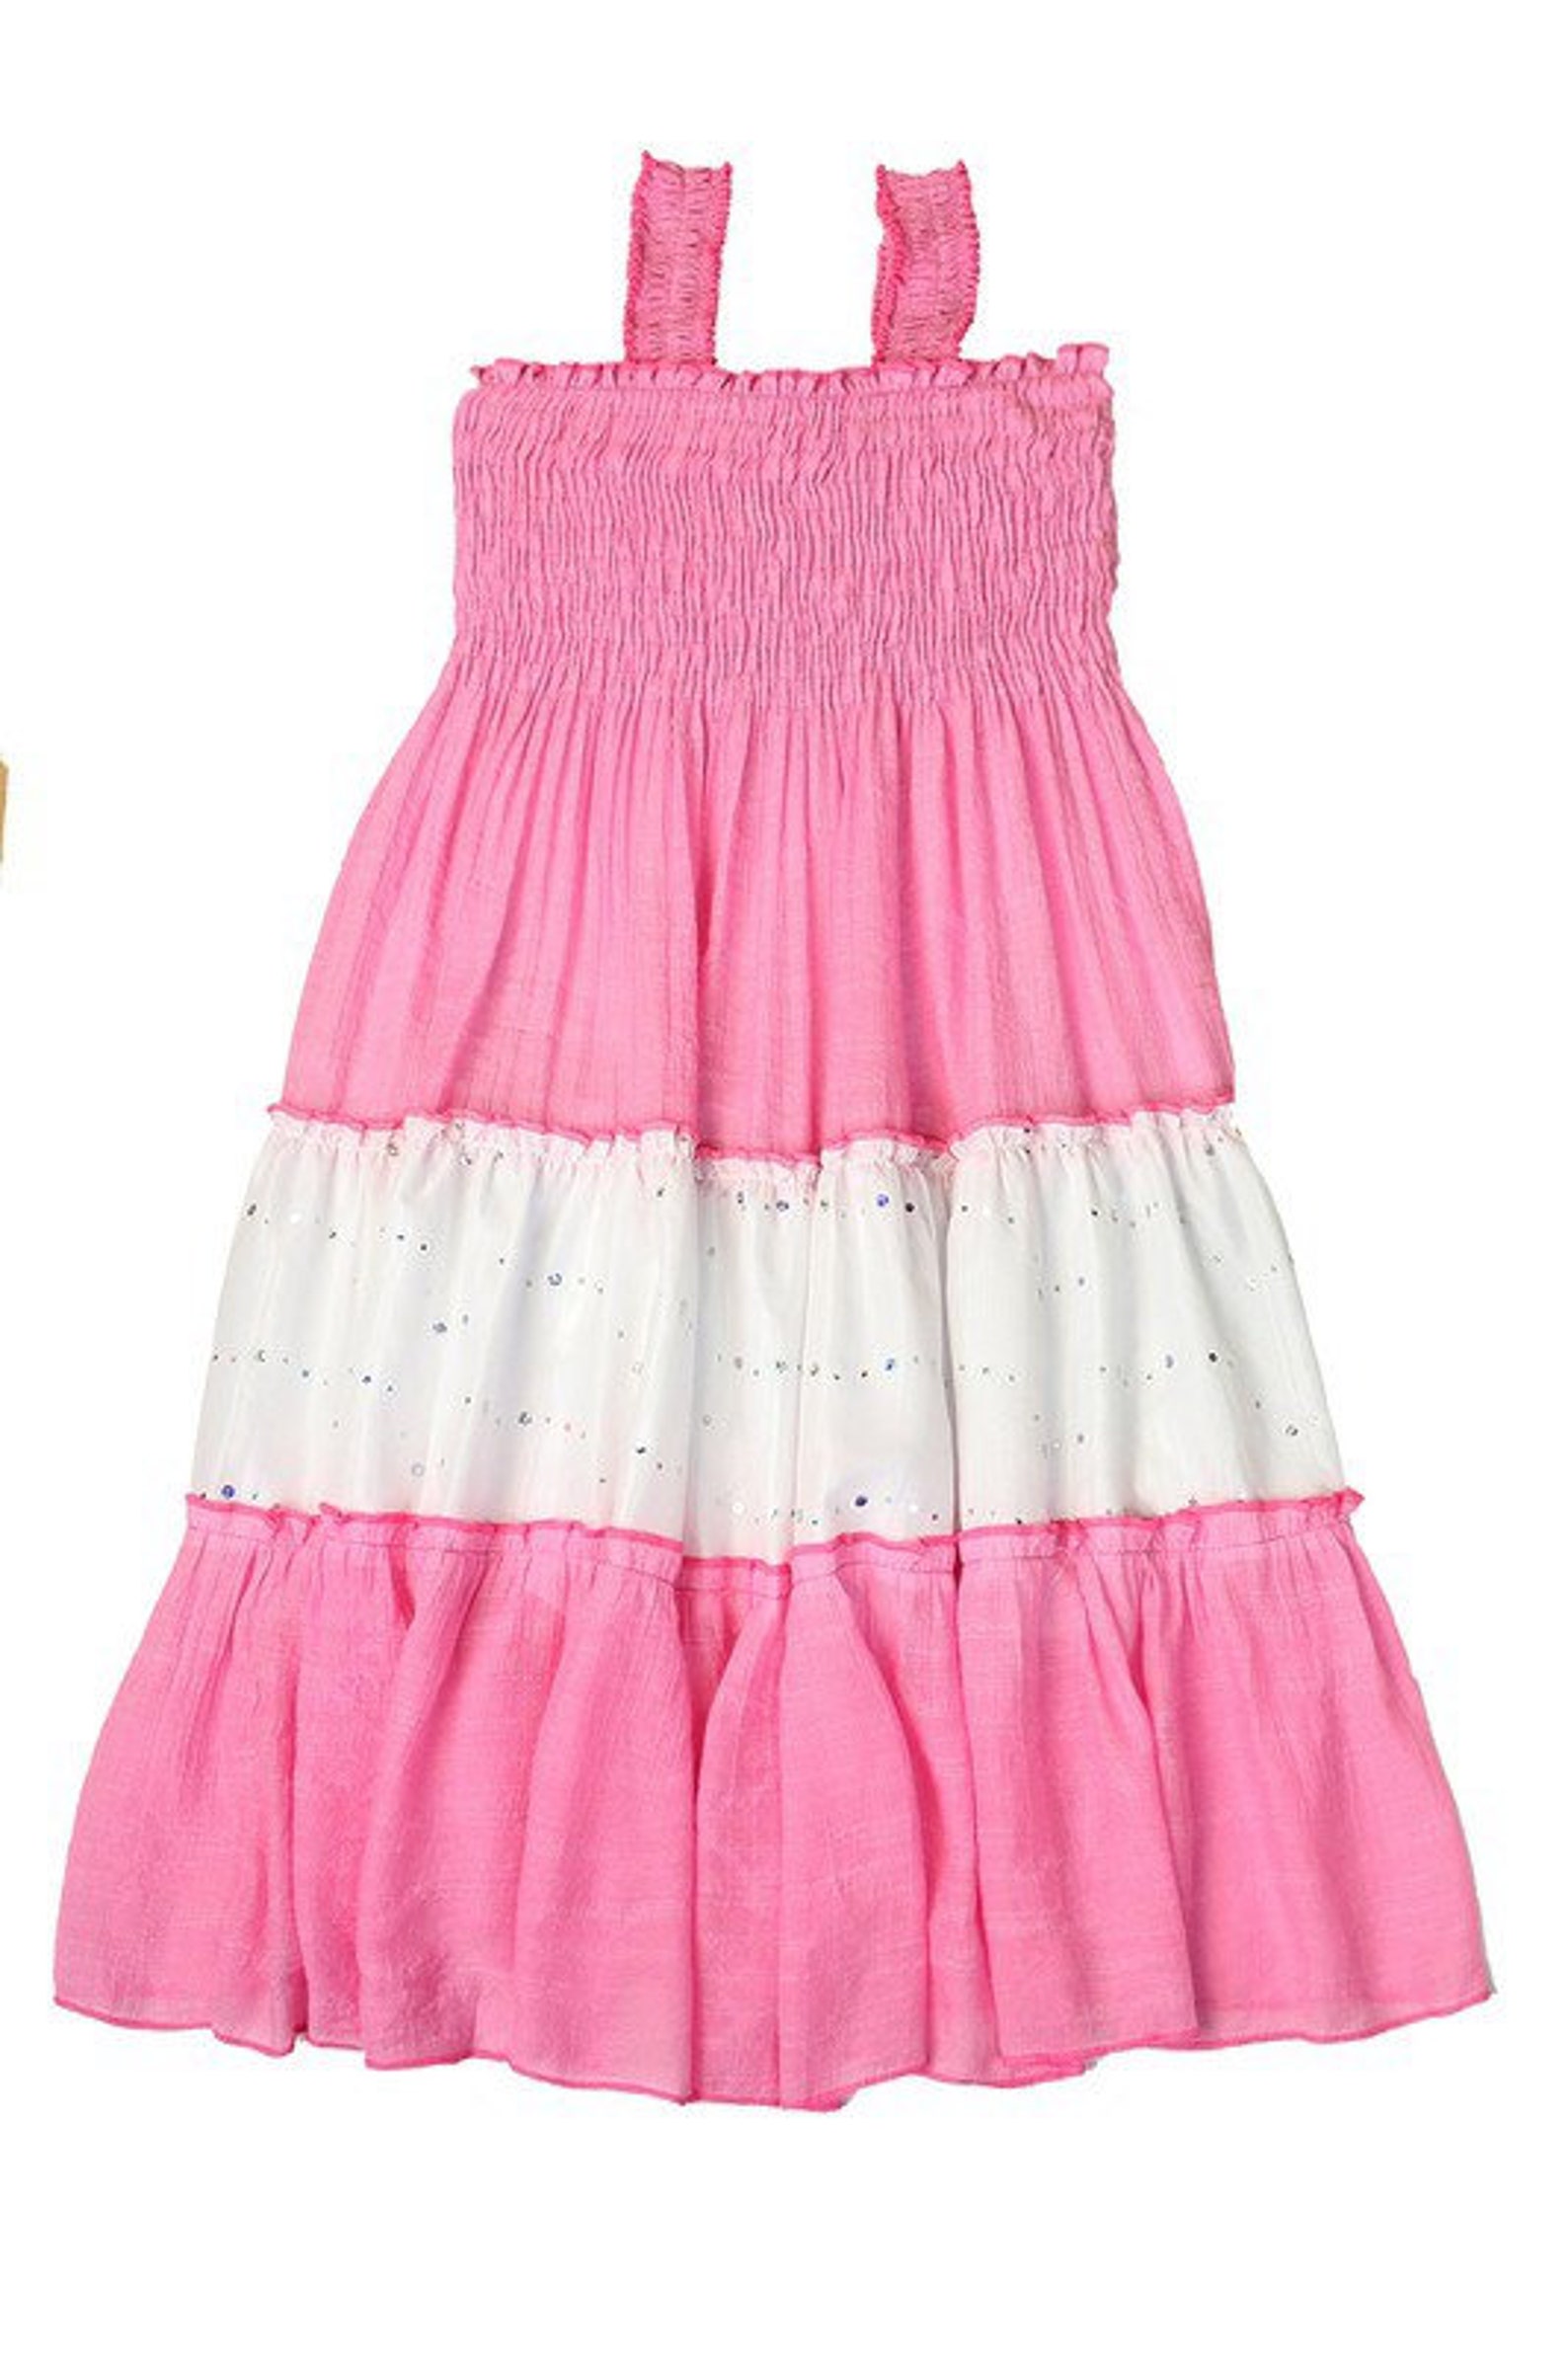 Little Girls Maxi Dress, Girls Twirl Dress, Summer Dress, Toddler Girl ...